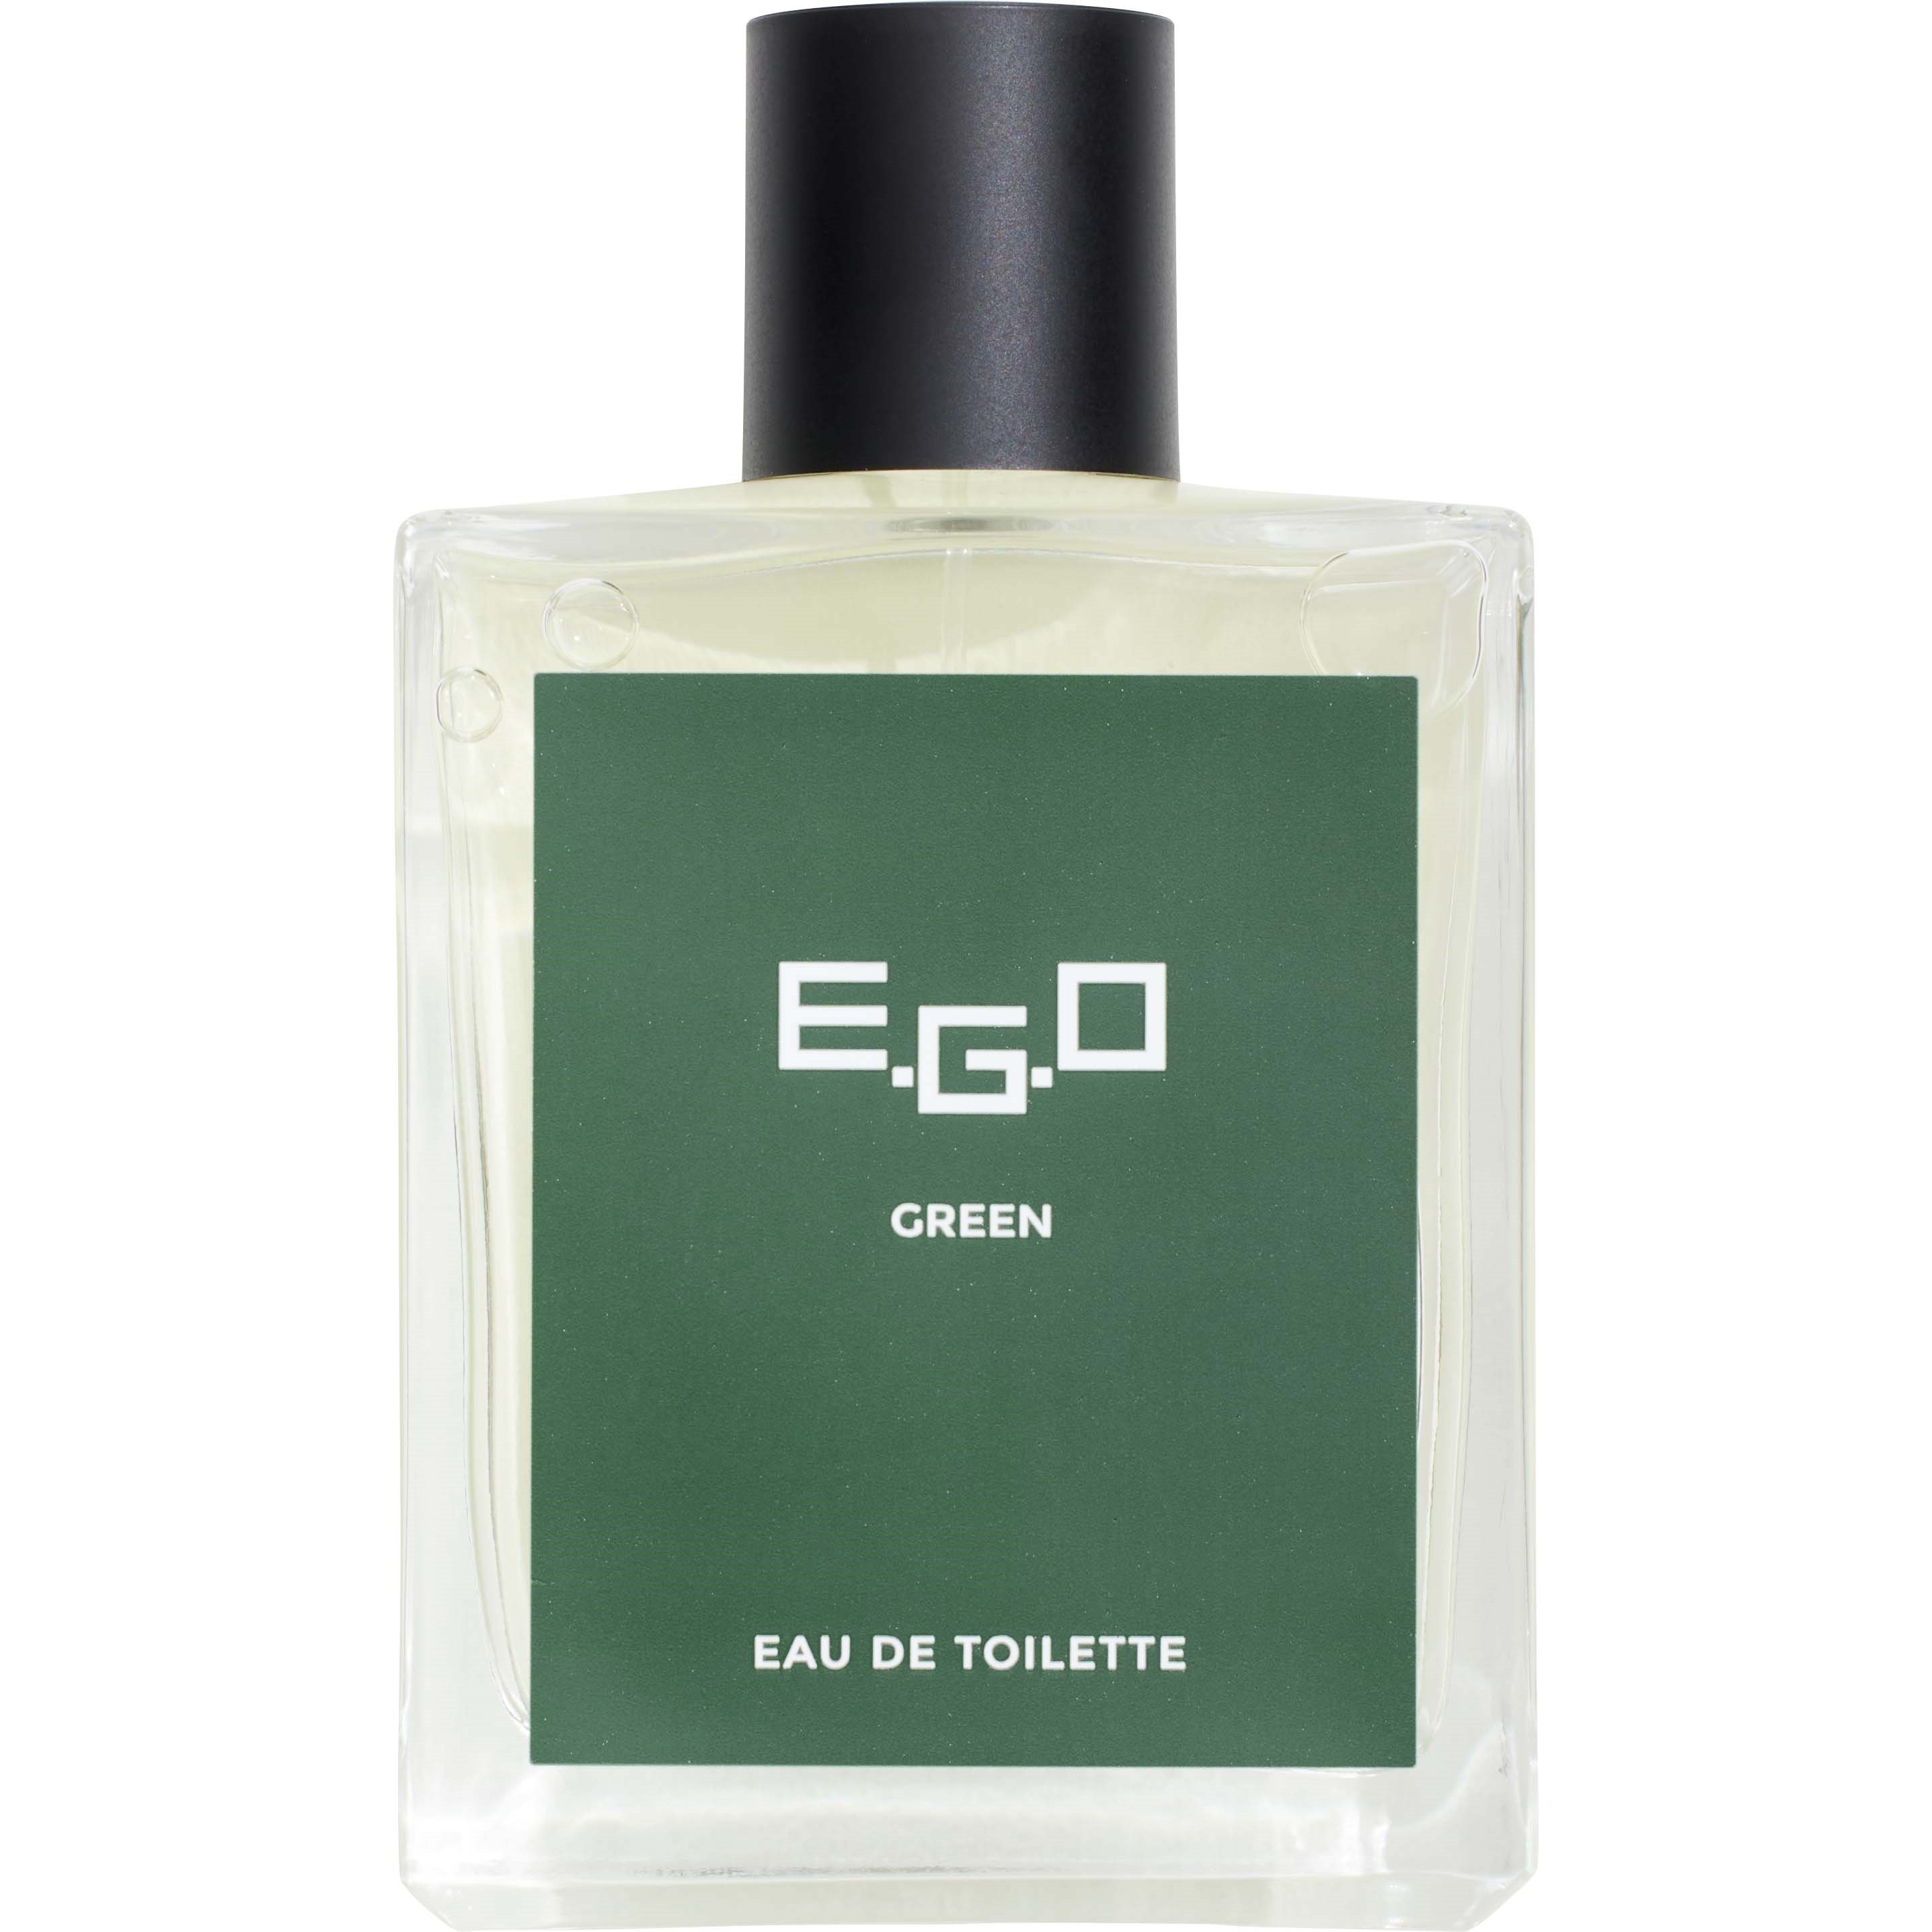 Gosh E.G.O Green For Him Eau de Toilette 100 ml